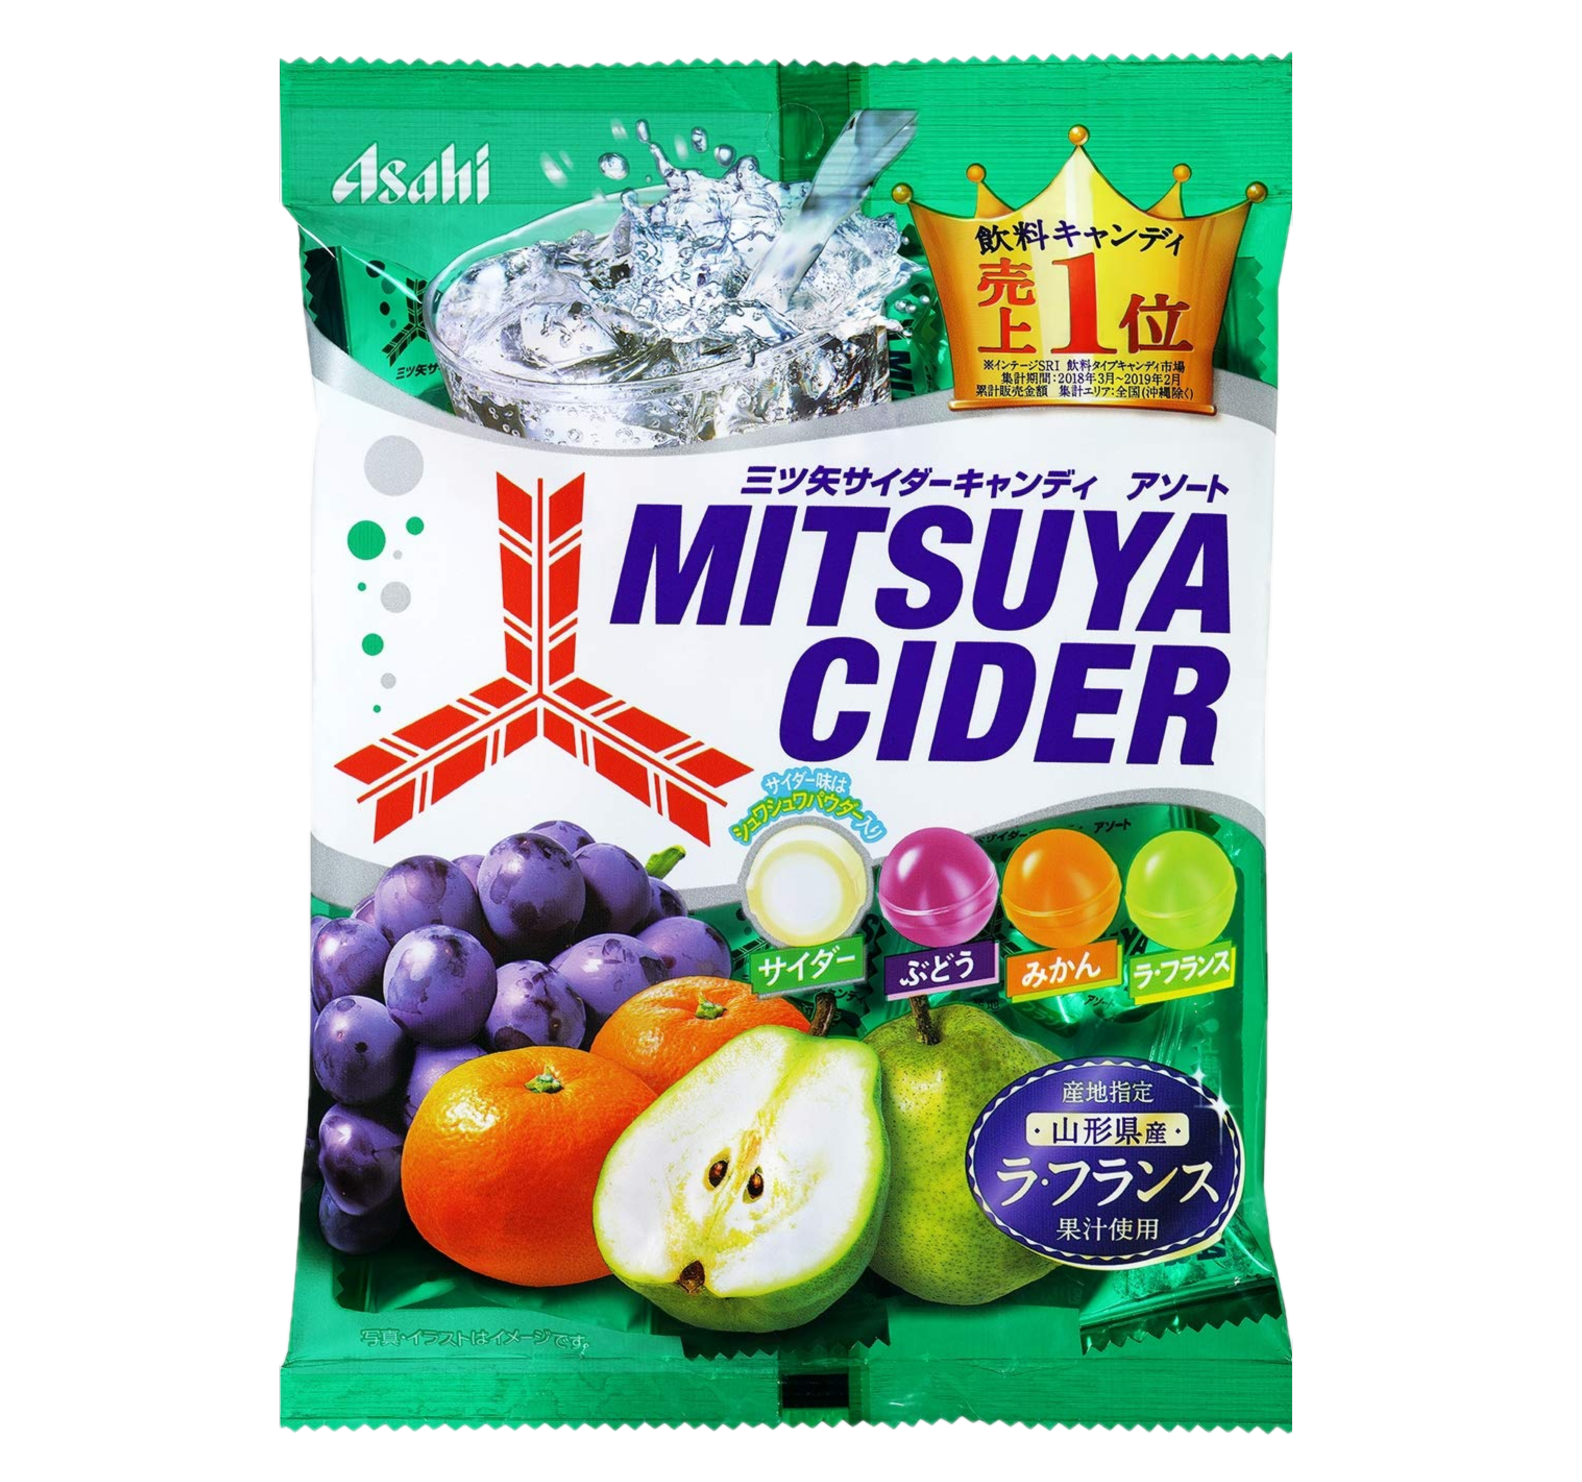 Mitsuya Cider Candy Sun Wah